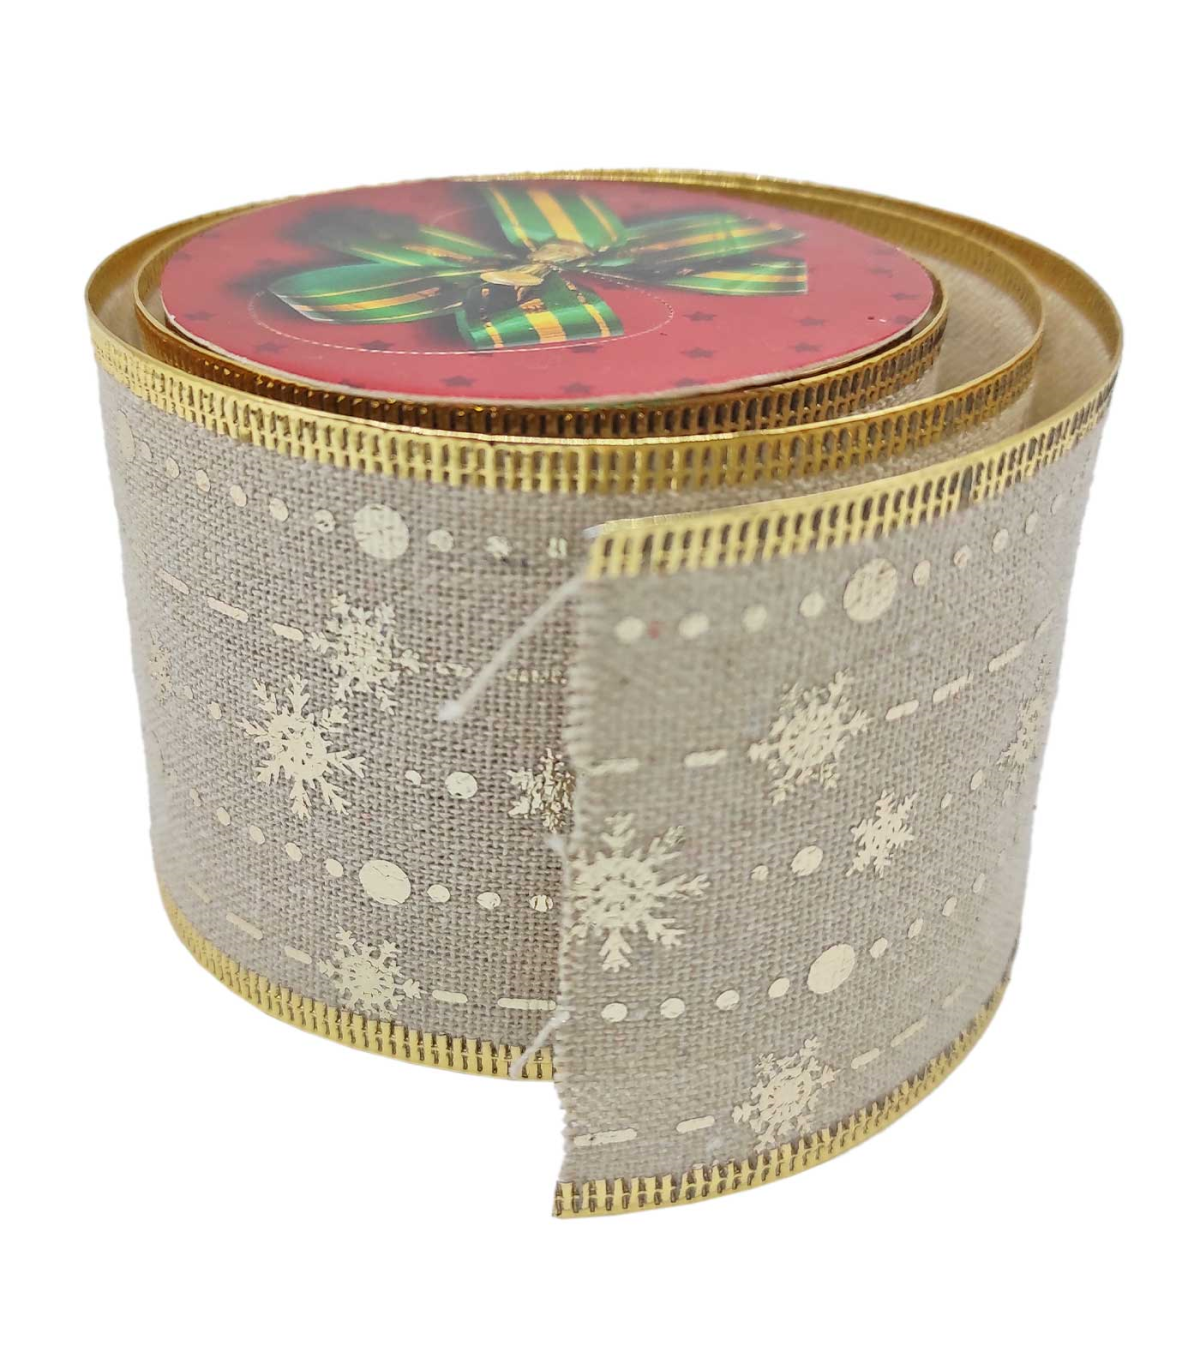 Tradineur - Pack de 5 rollos de papel de regalo, modelo Navidad 16002,  láminas, hojas para envolver regalos, cumpleaños, Navidad